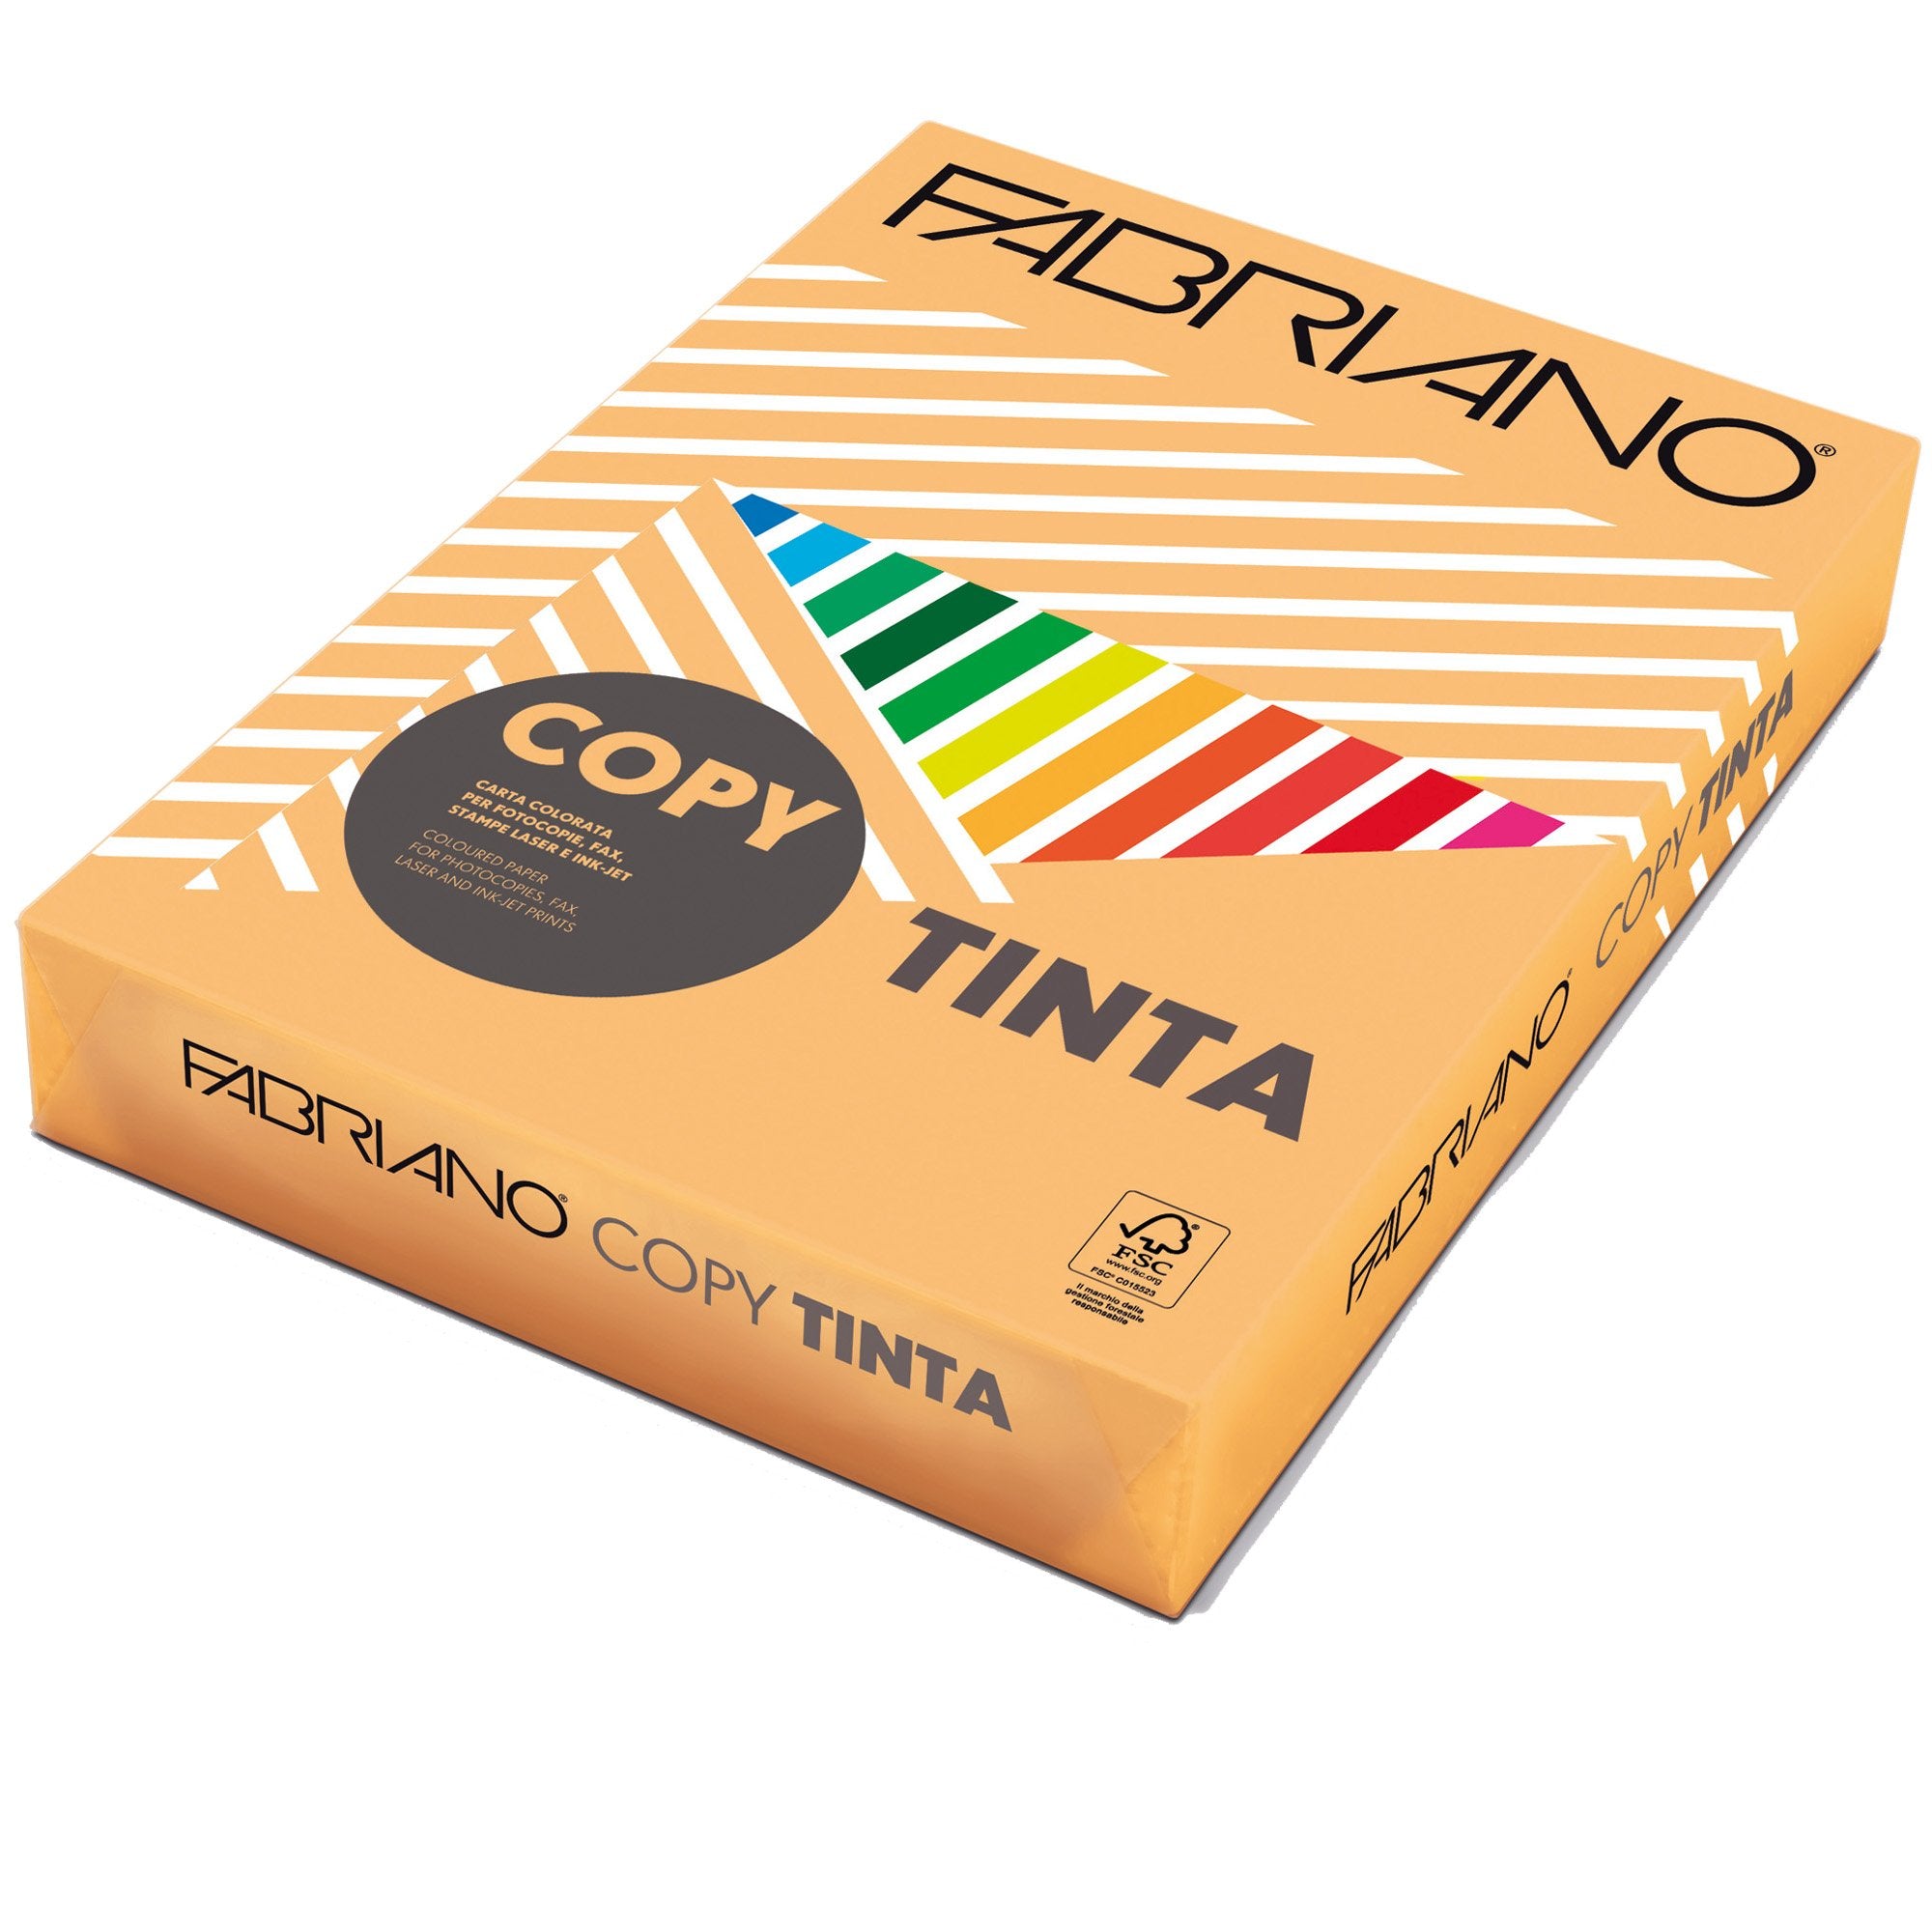 fabriano-carta-copy-tinta-a4-80gr-500fg-col-tenue-albicocca